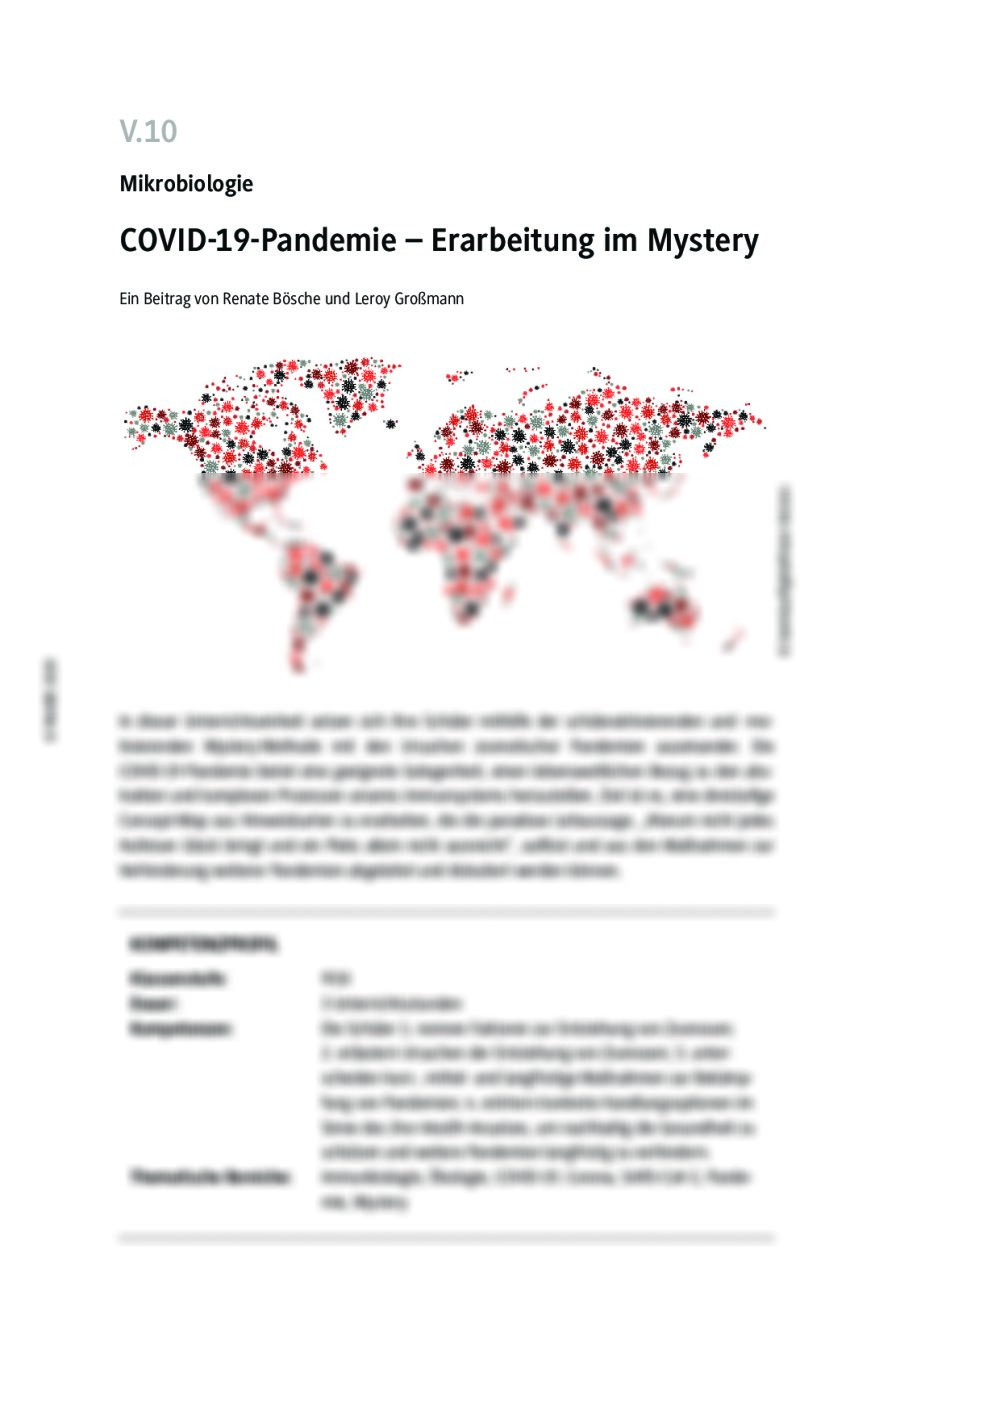 COVID-19-Pandemie - Seite 1